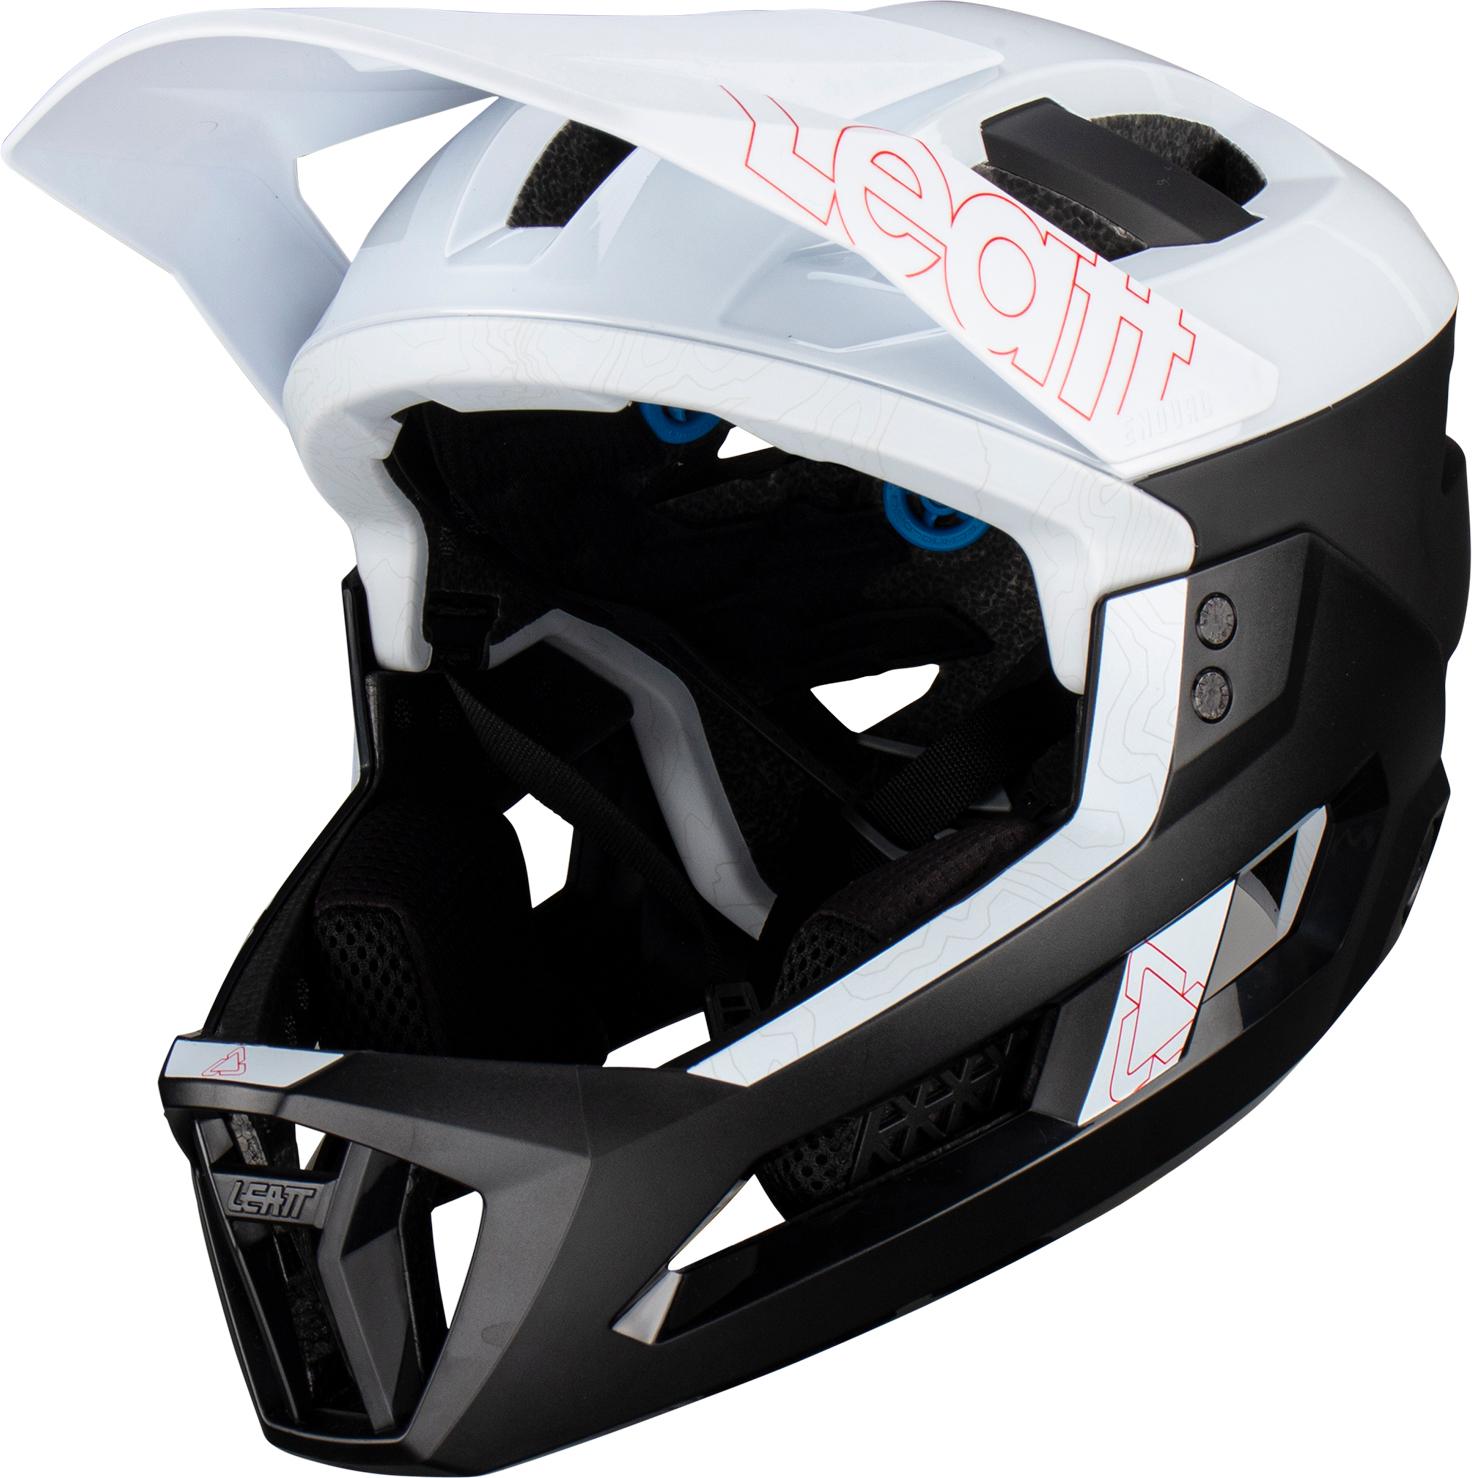 Leatt Mtb Enduro 3.0 Helmet - White